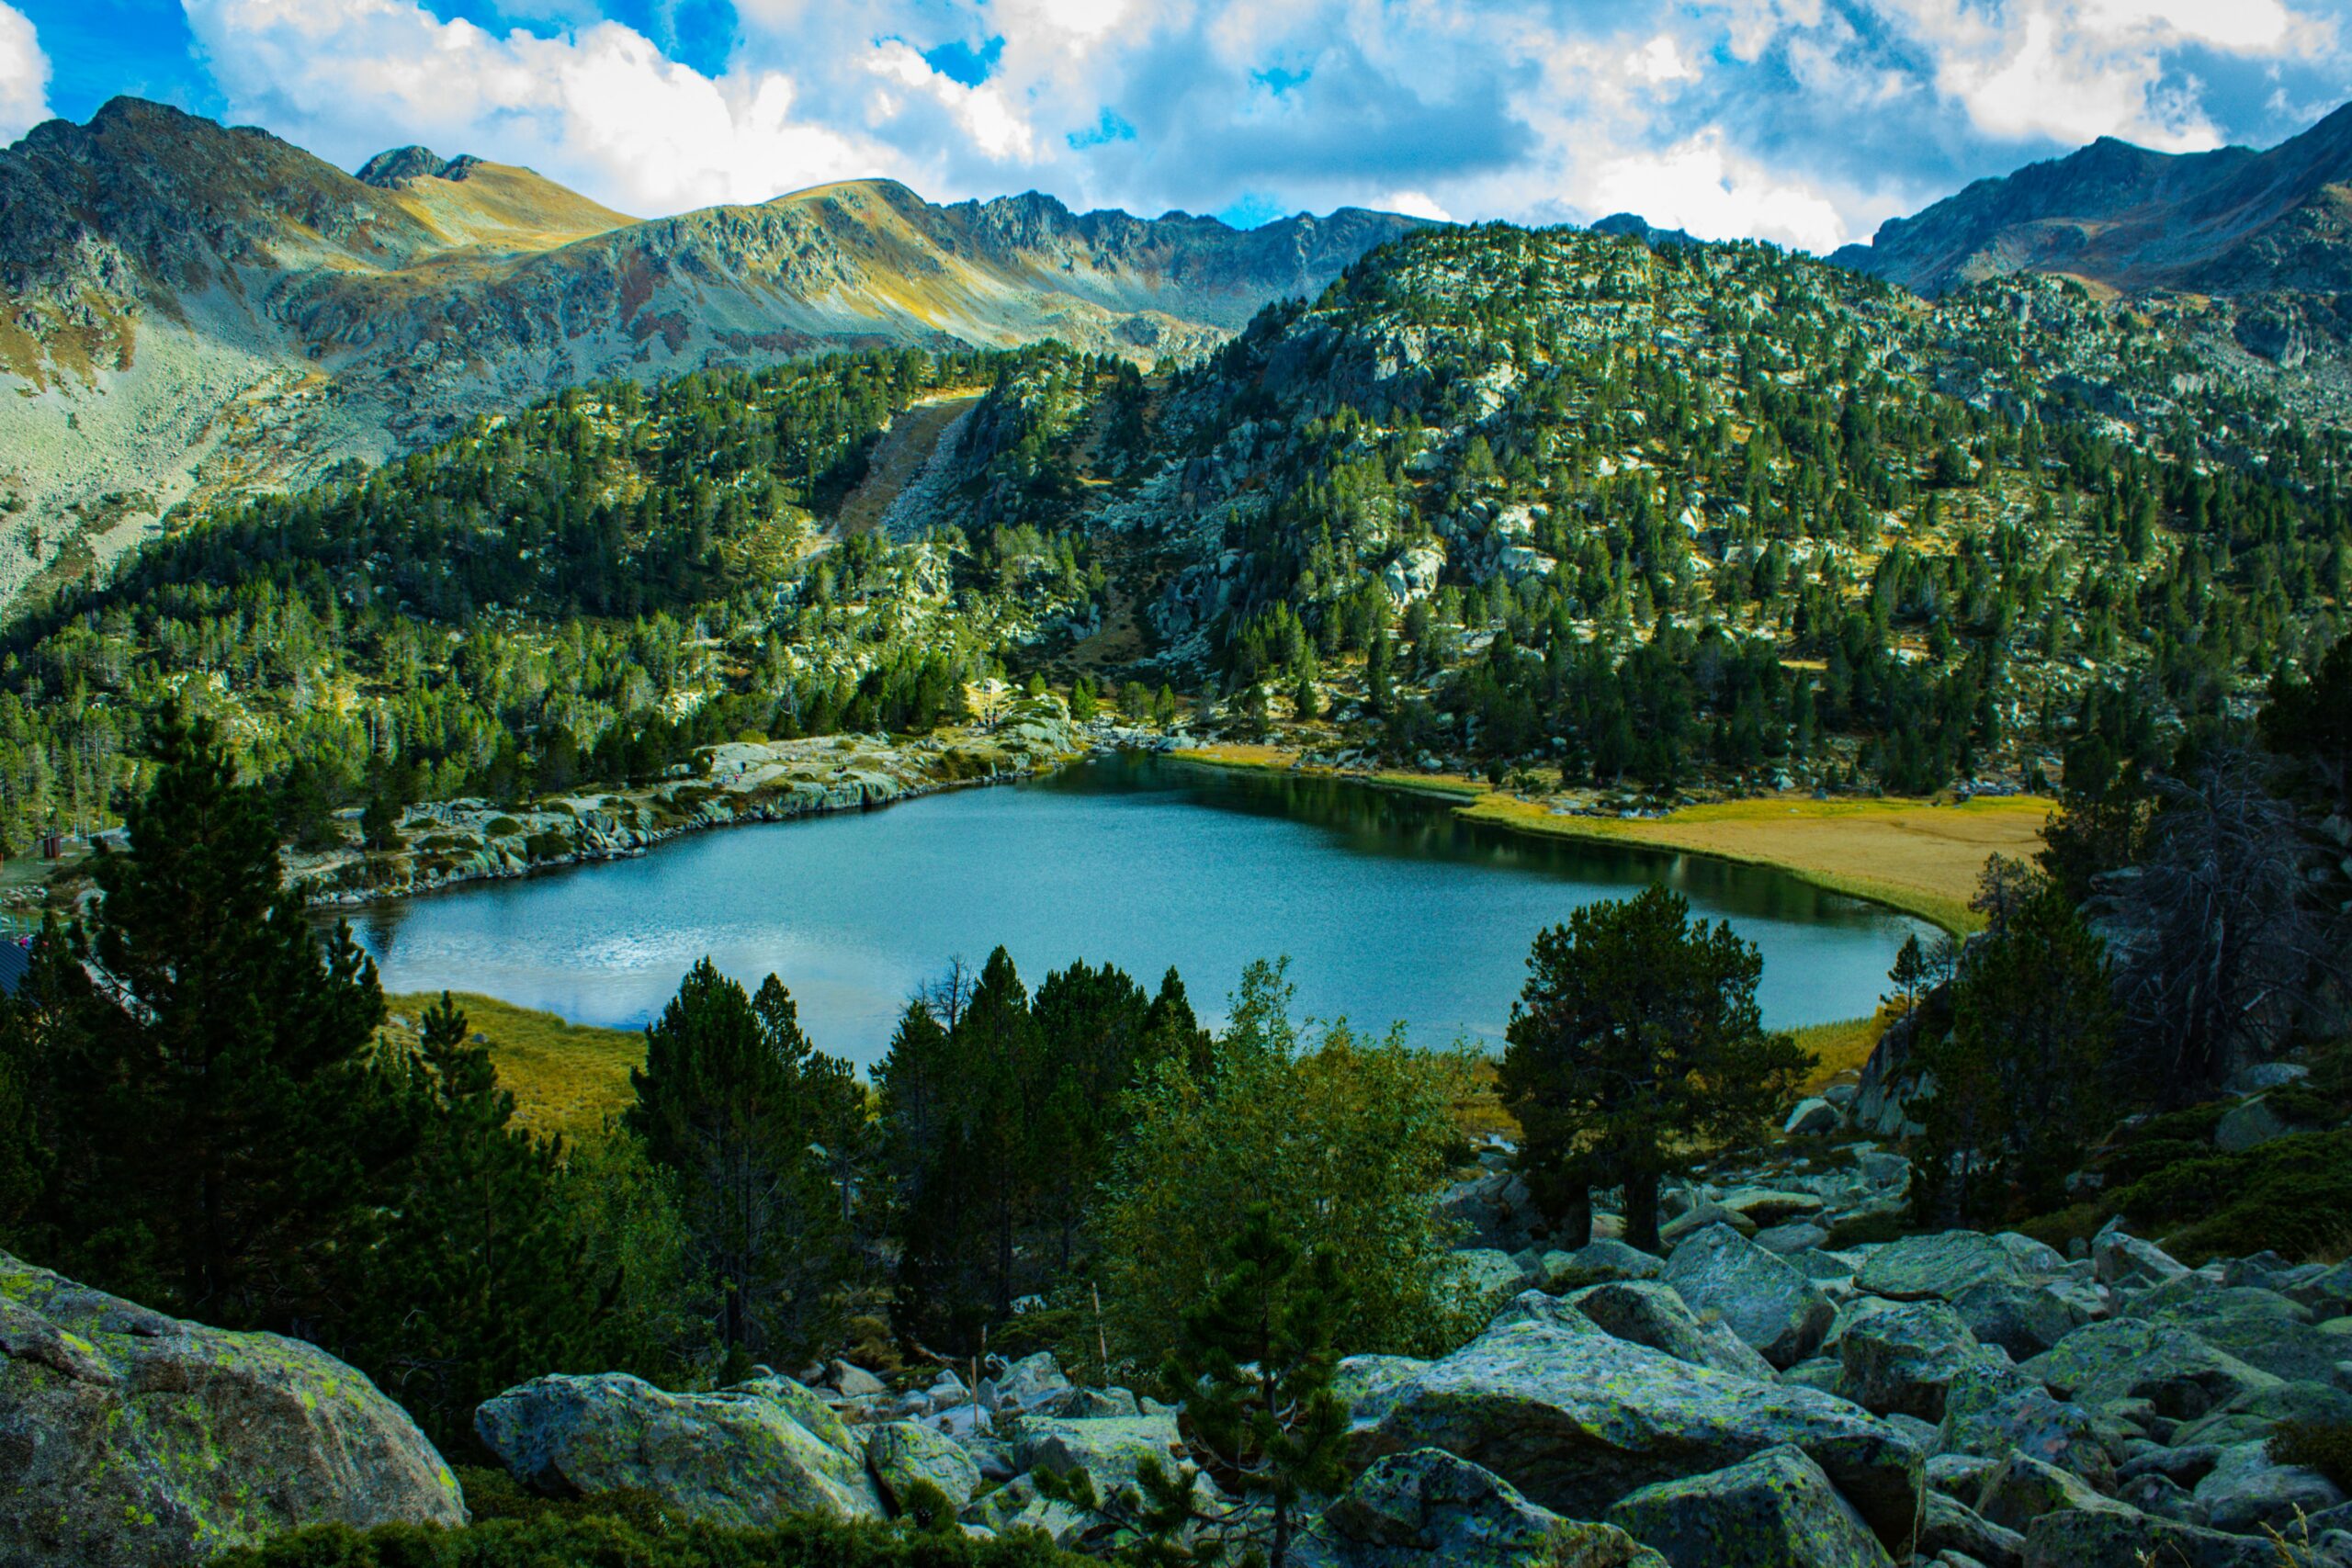 Vista do lago Estanys de Tristaina, Andorra com aguas claras envolta de floresta. Representa o seguro viagem para Andorra.